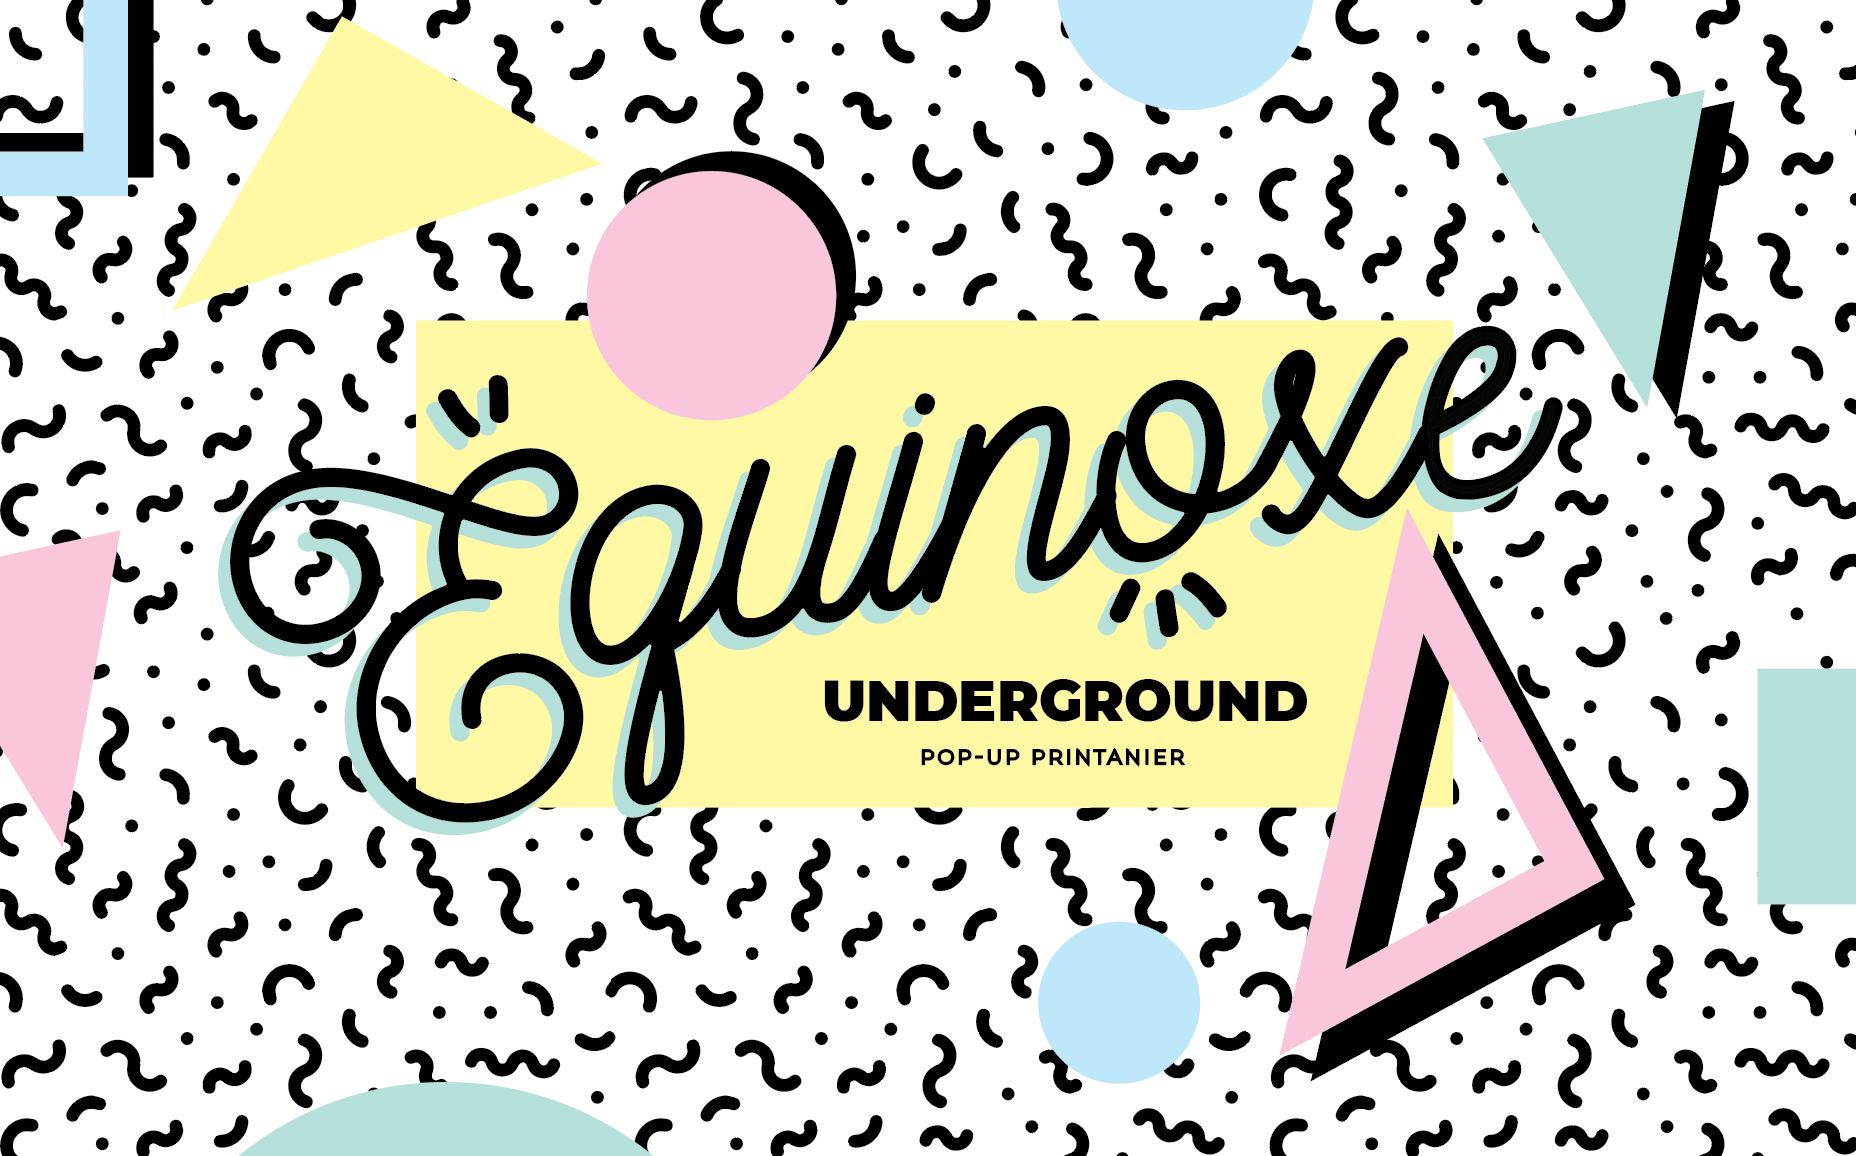 Équinoxe Underground